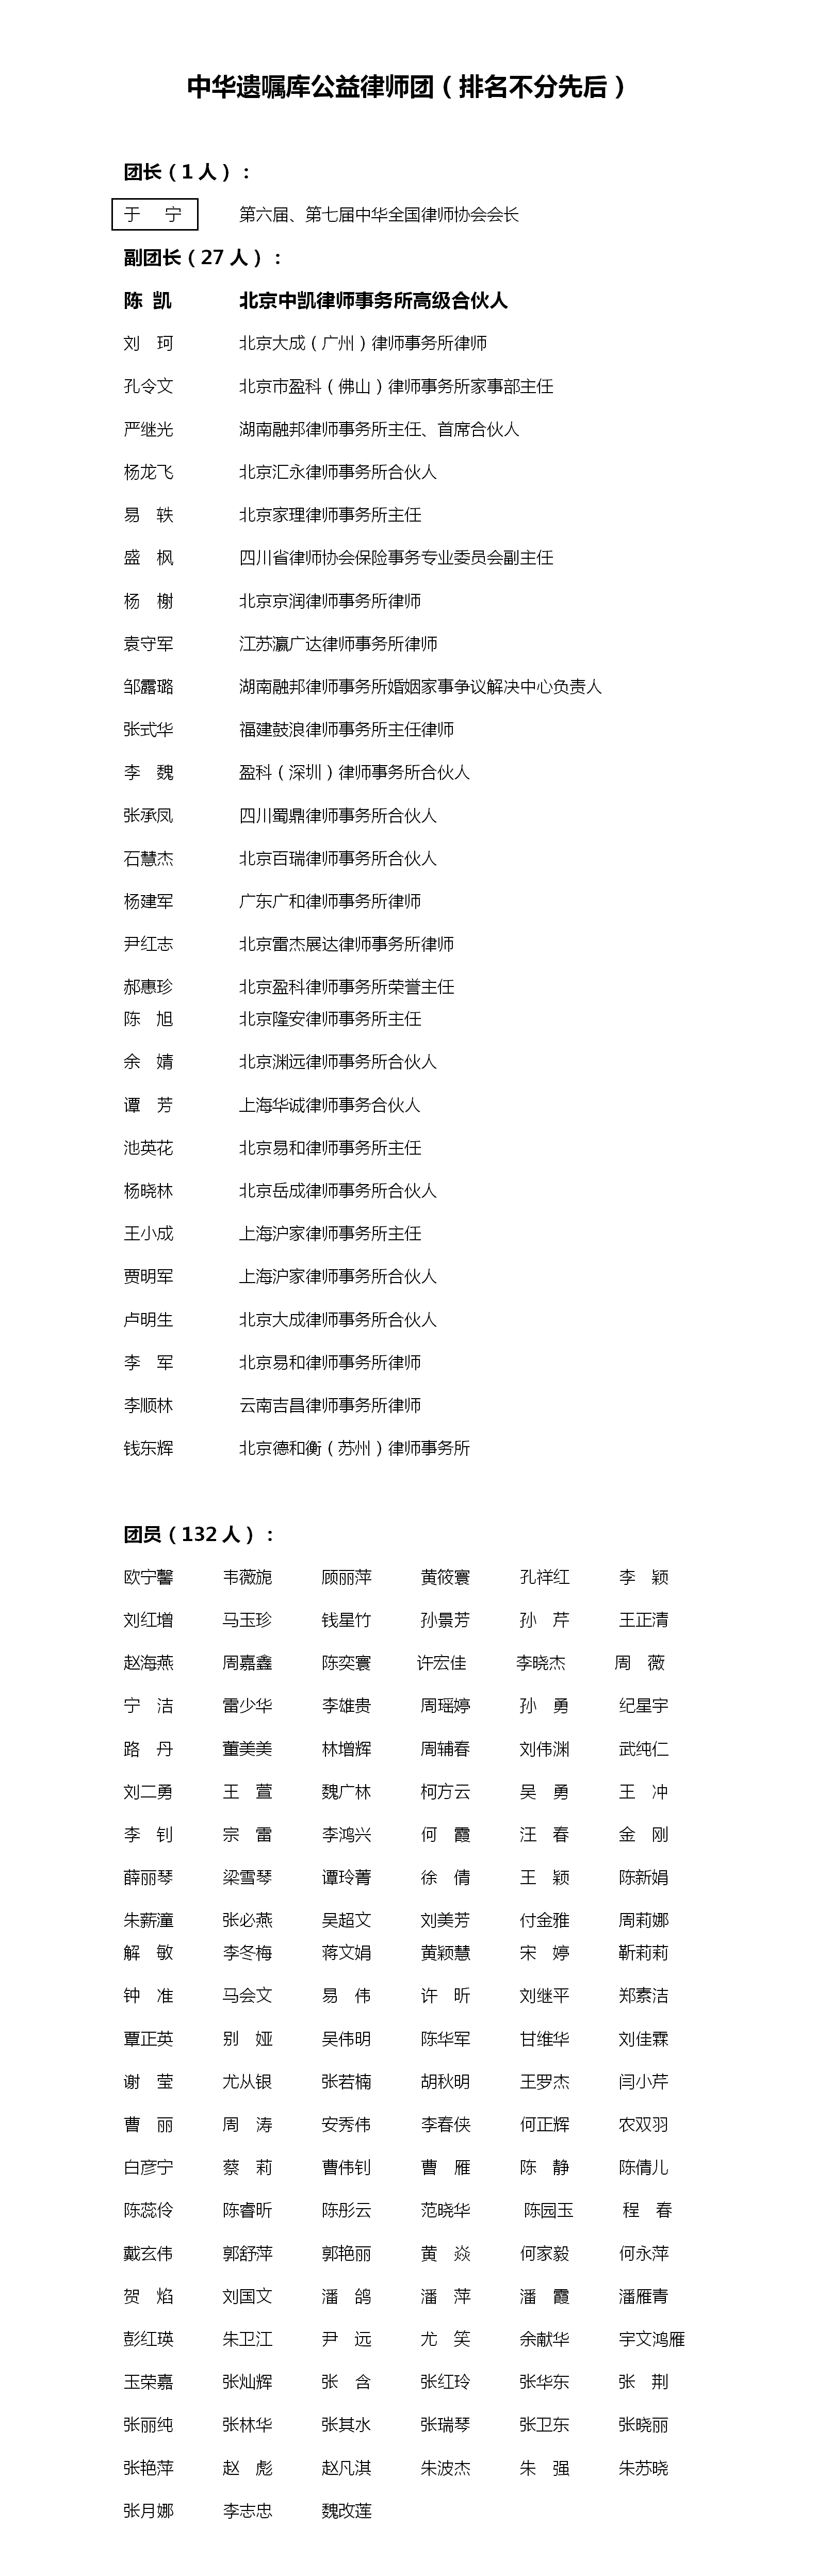 中华遗嘱库公益律师团名单20221230(1)_01.png